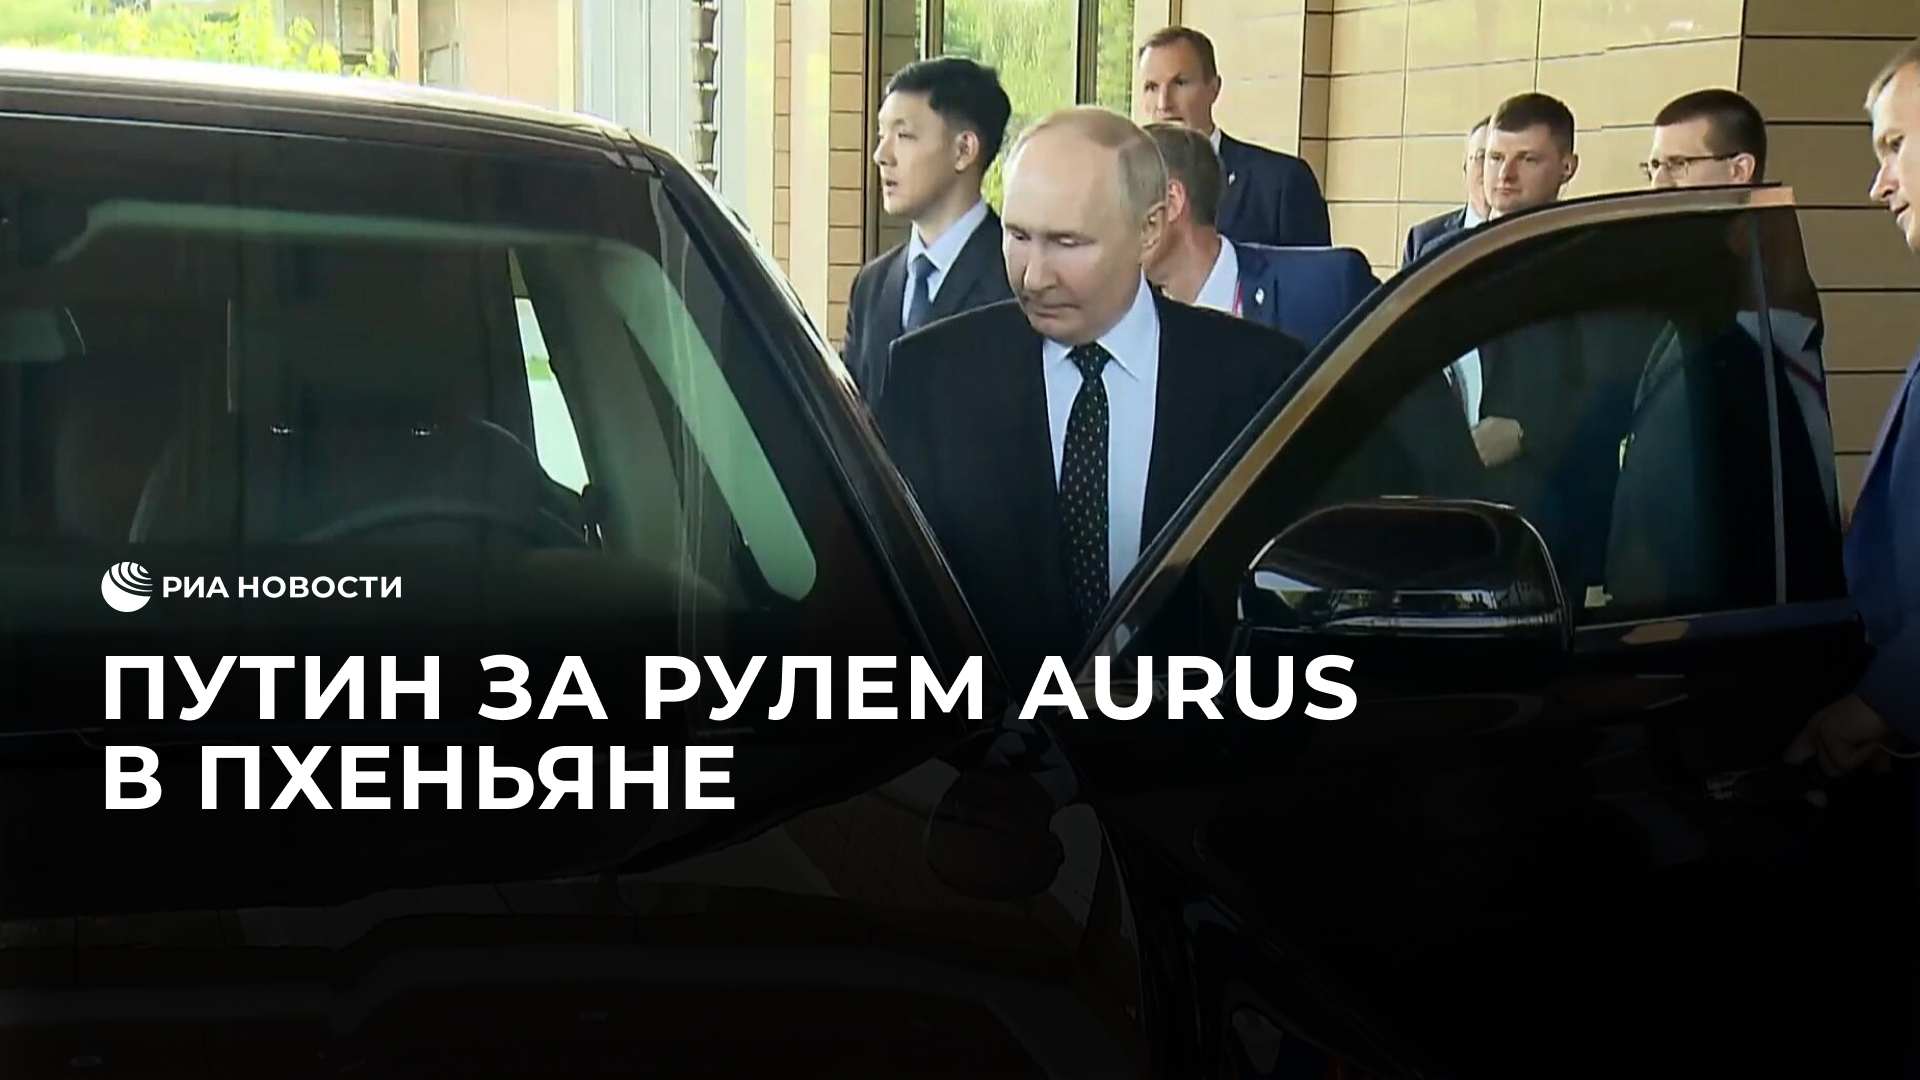 Путин за рулем Aurus в Пхеньяне